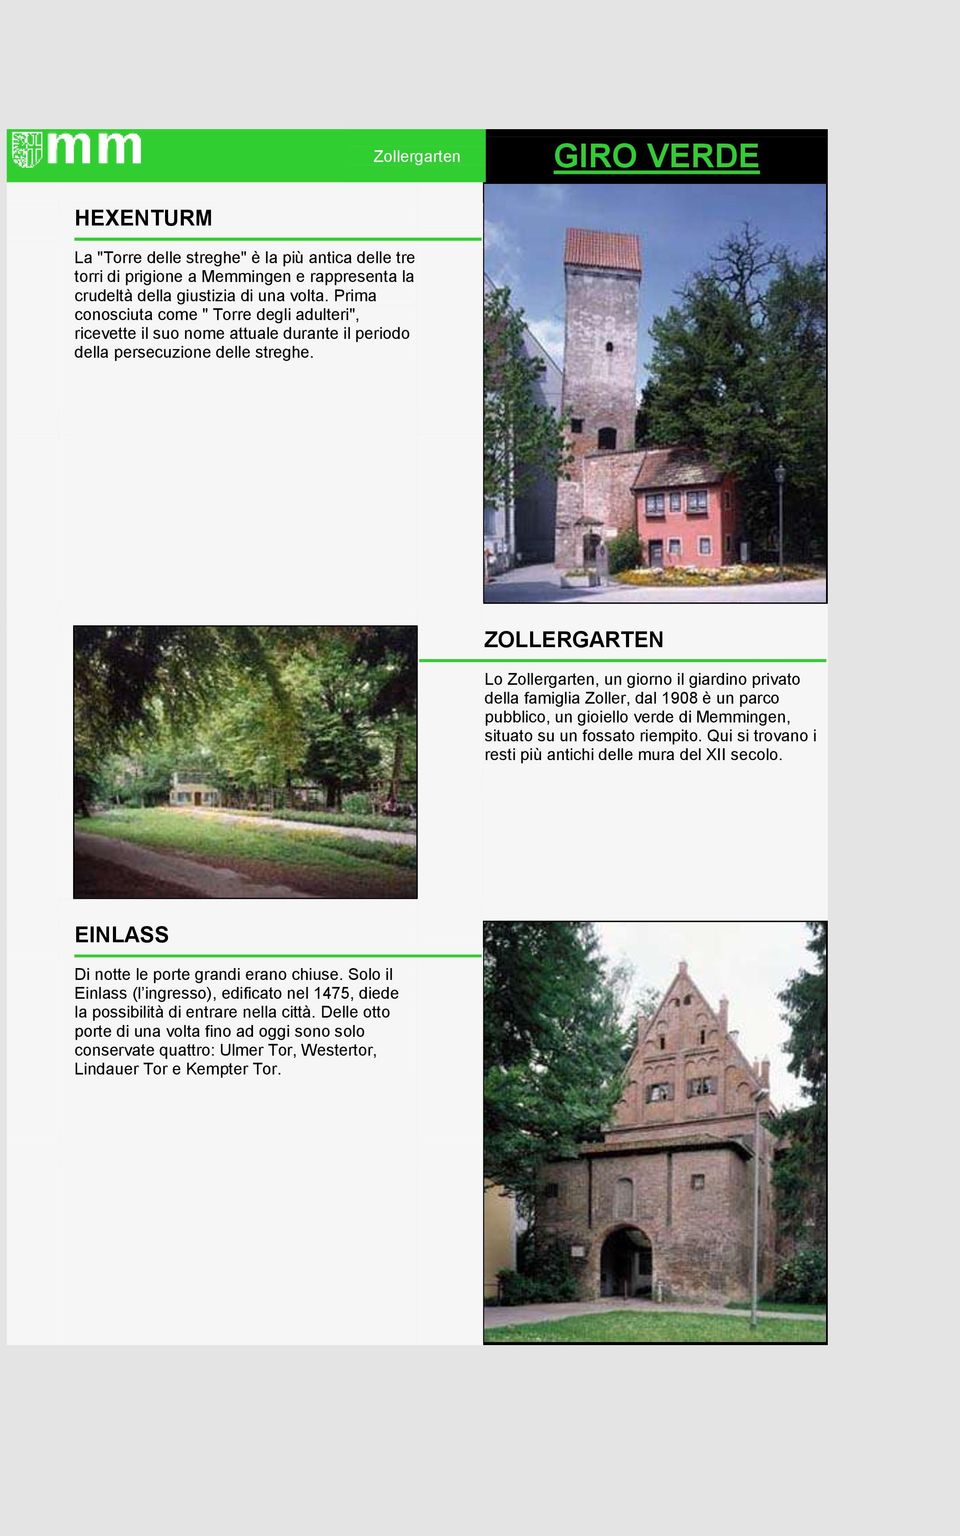 2 ZOLLERGARTEN Lo Zollergarten, un giorno il giardino privato della famiglia Zoller, dal 1908 è un parco pubblico, un gioiello verde di Memmingen, situato su un fossato riempito.